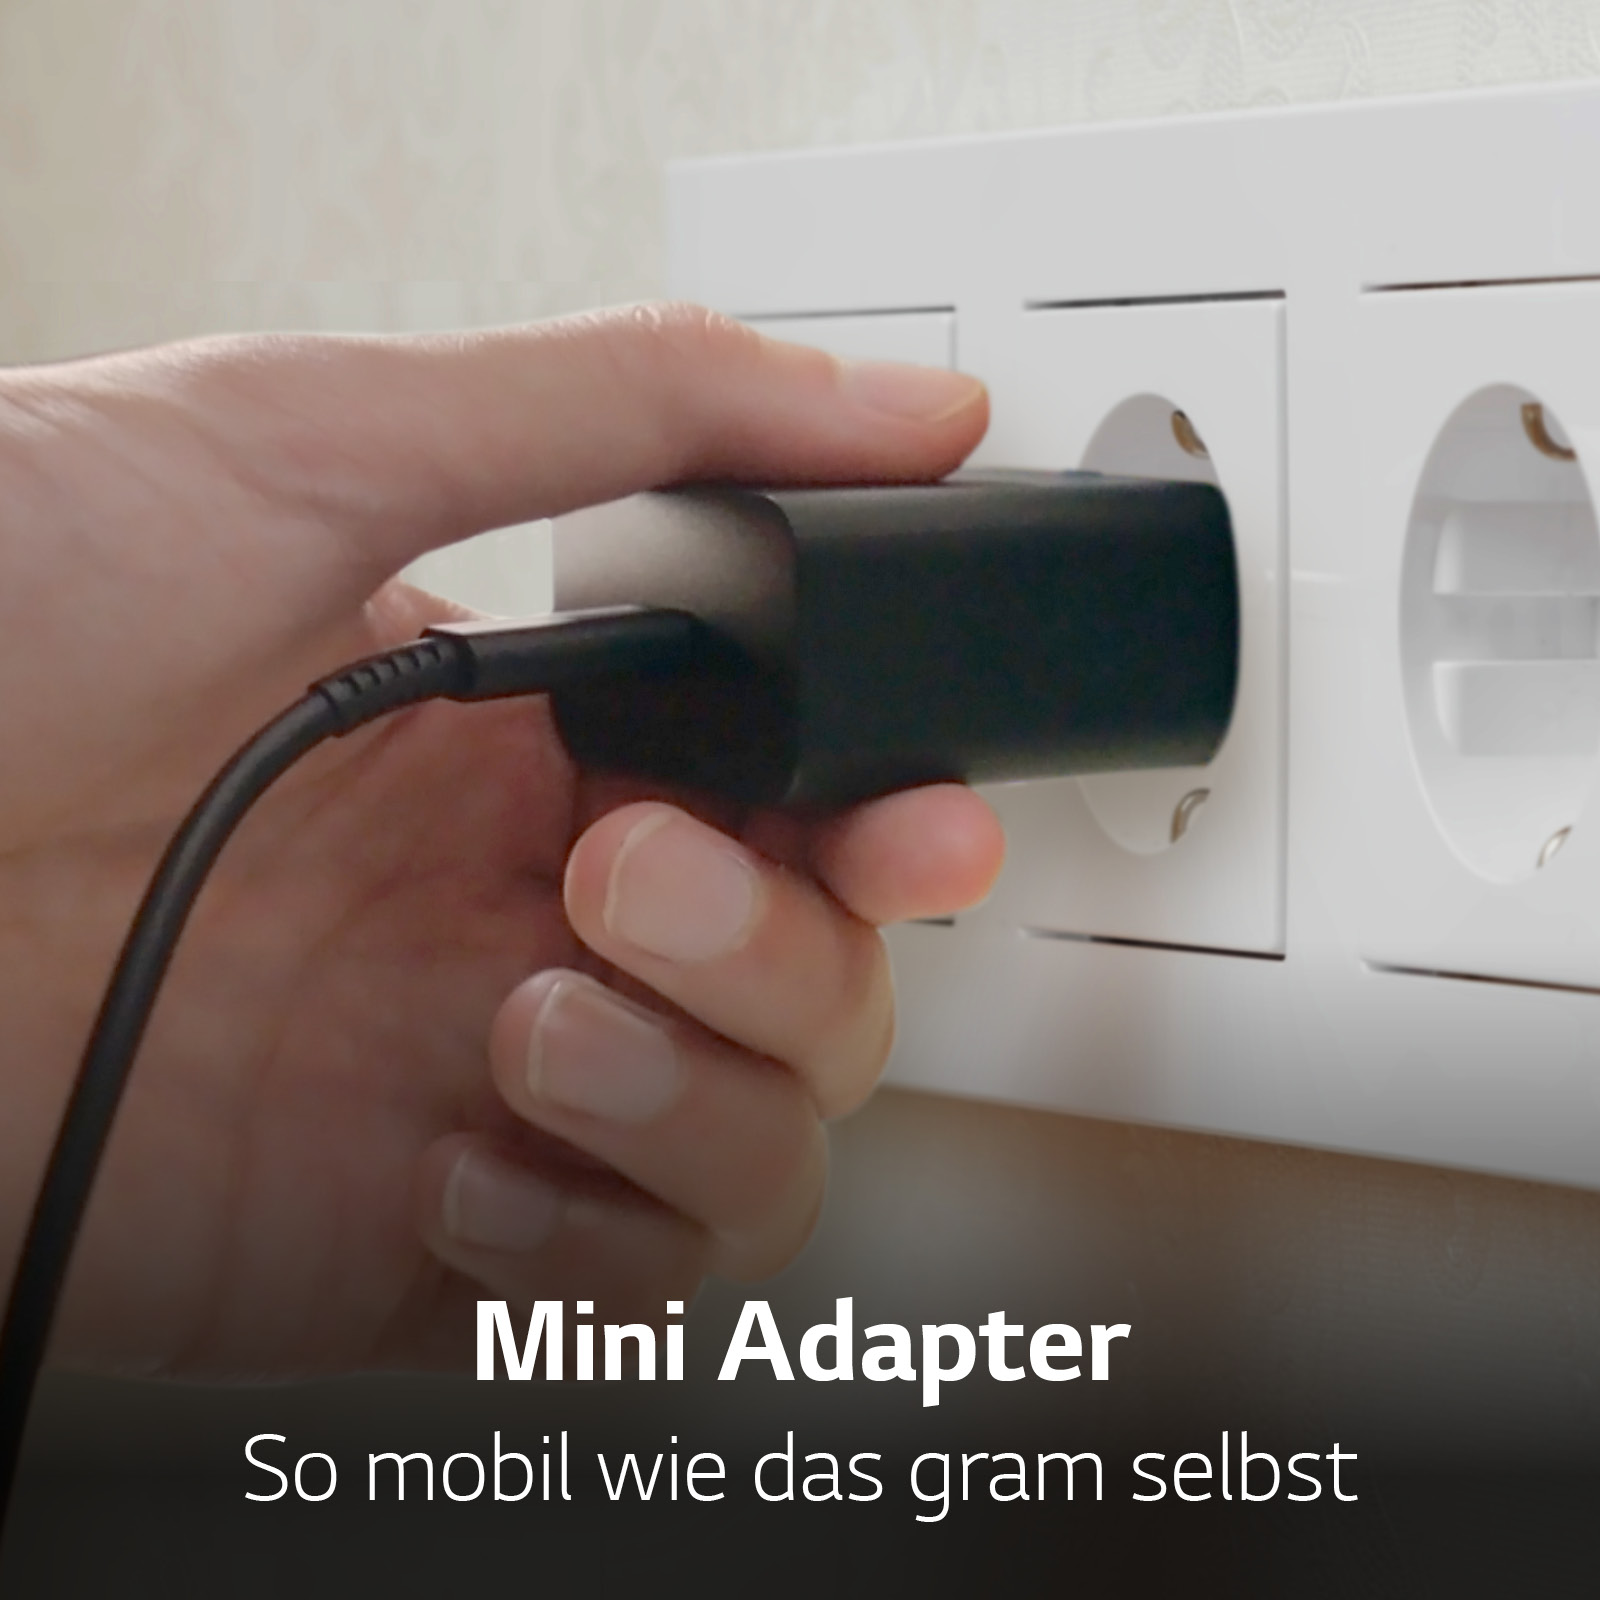 Der kleinere Adapter ist mit dem Gram verbunden.